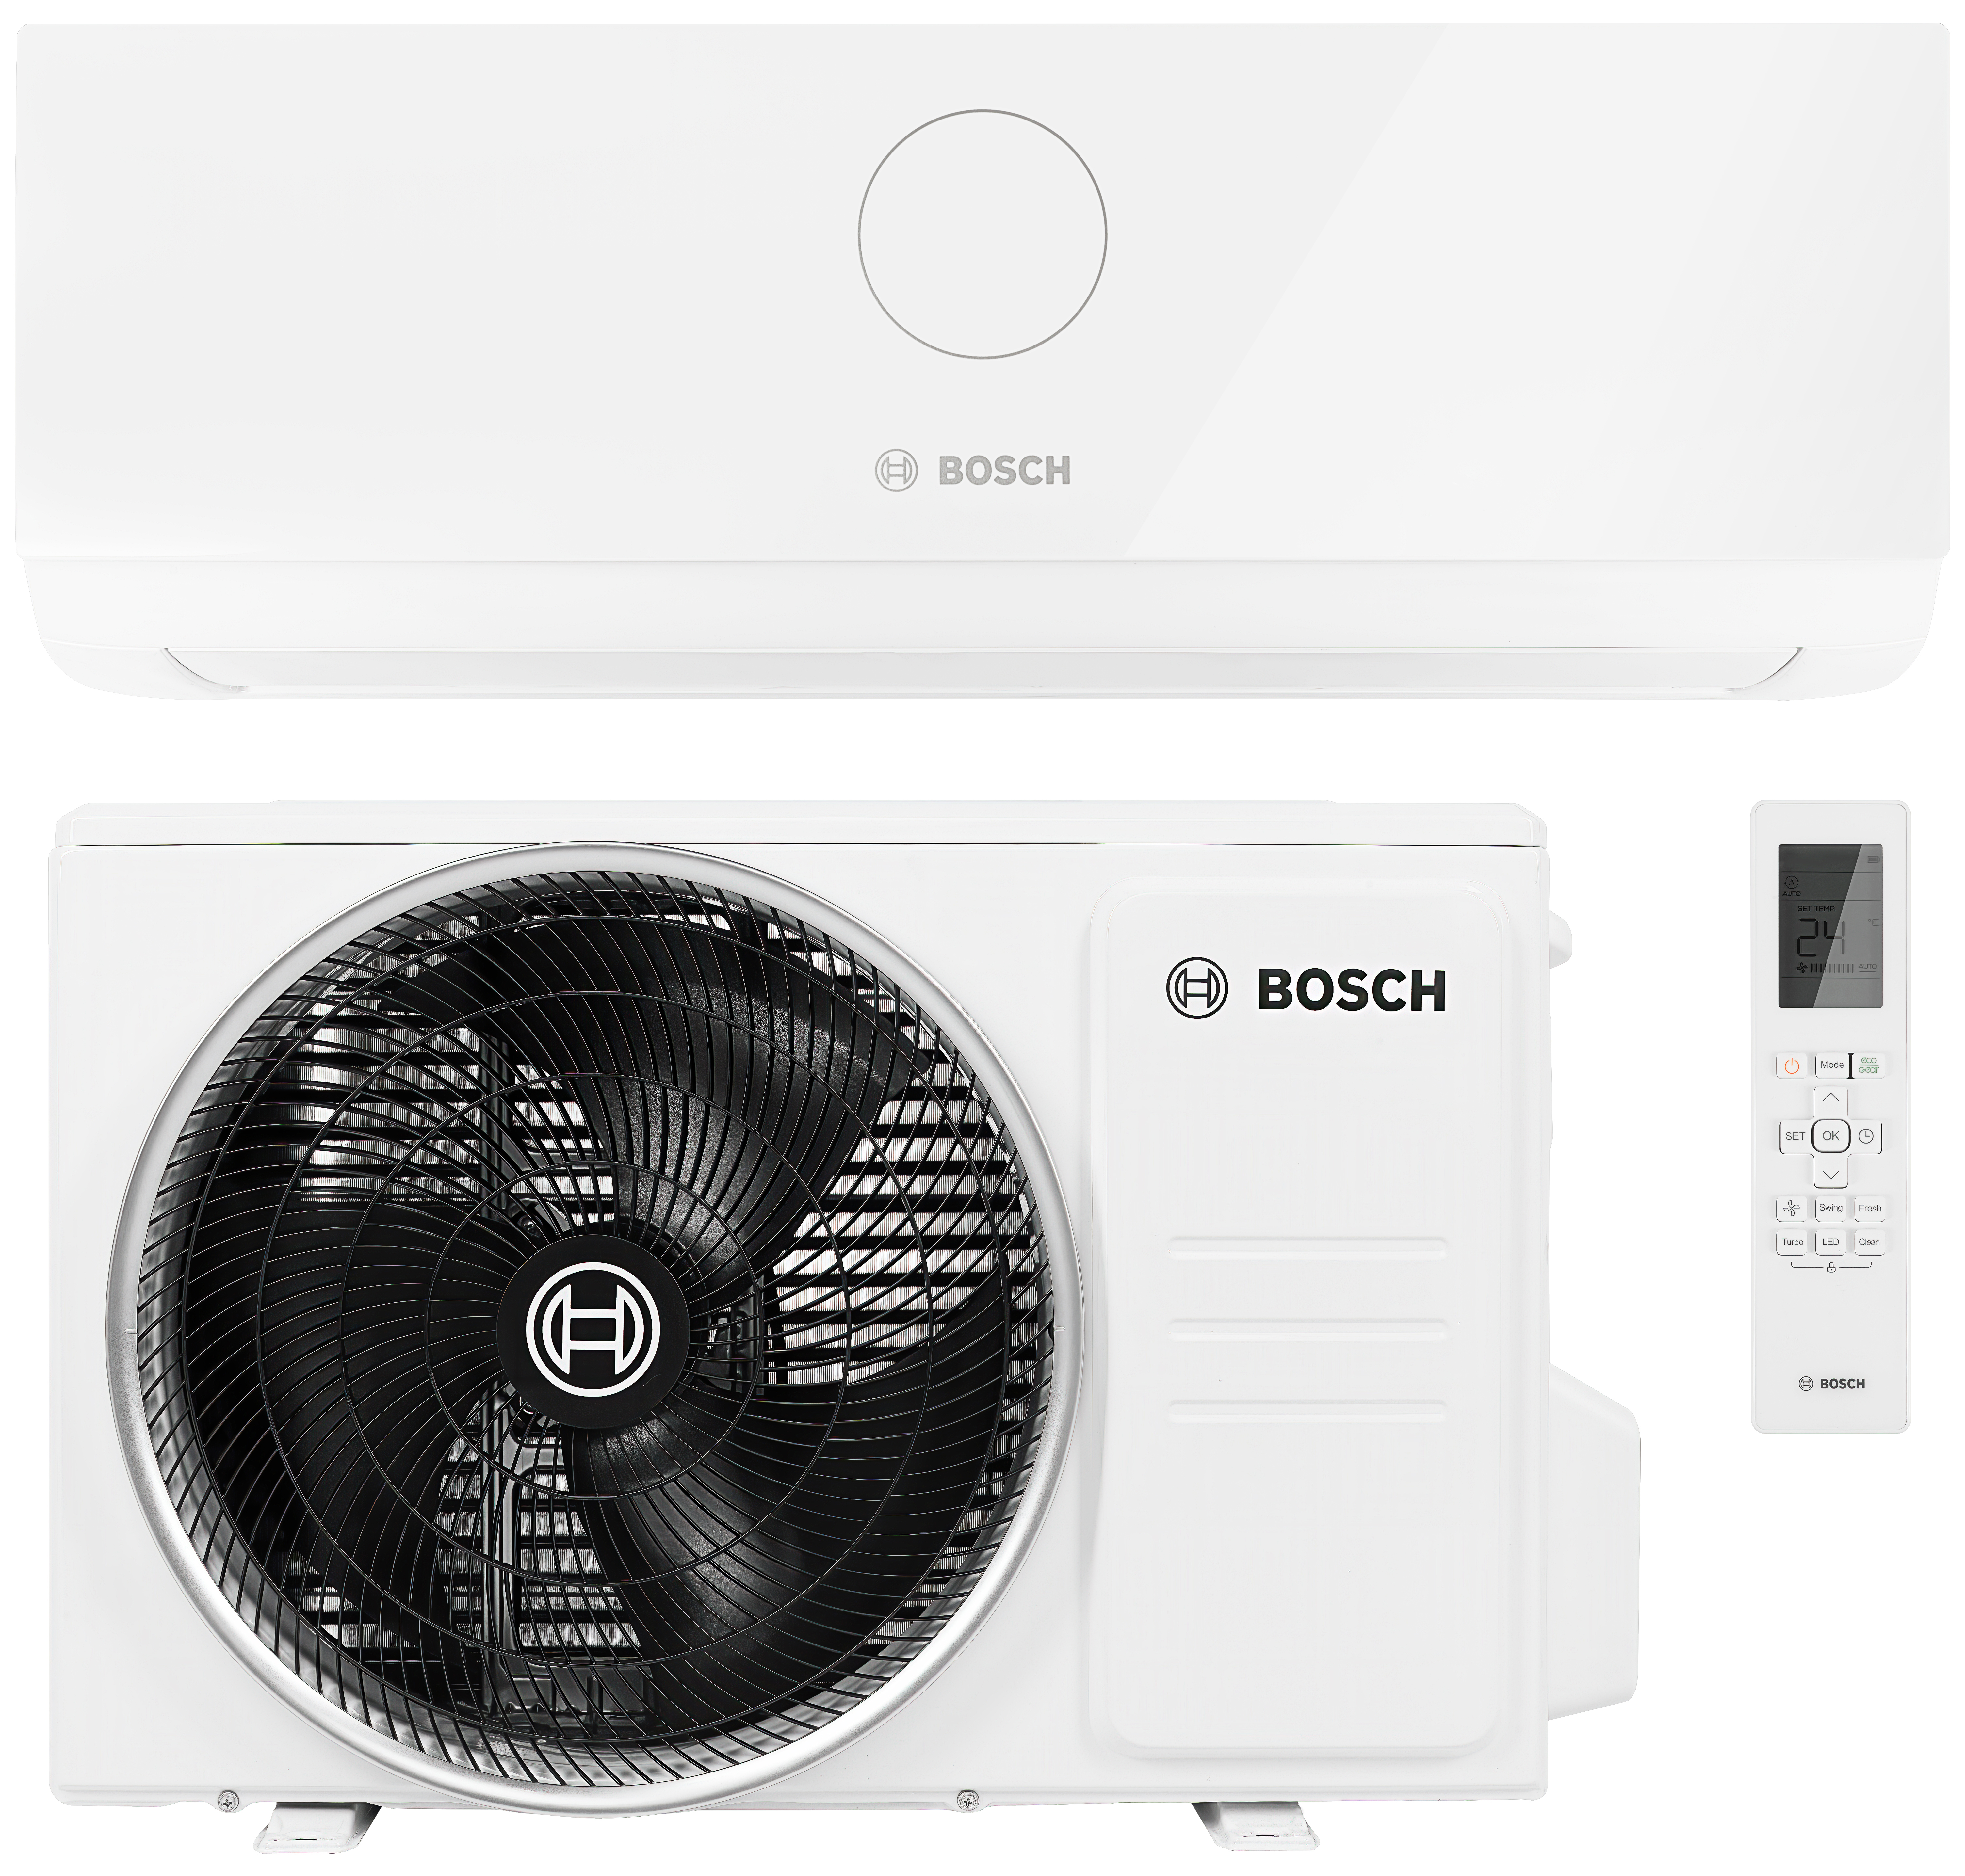 Інструкція кондиціонер спліт-система Bosch Climate CL3000i 35 E